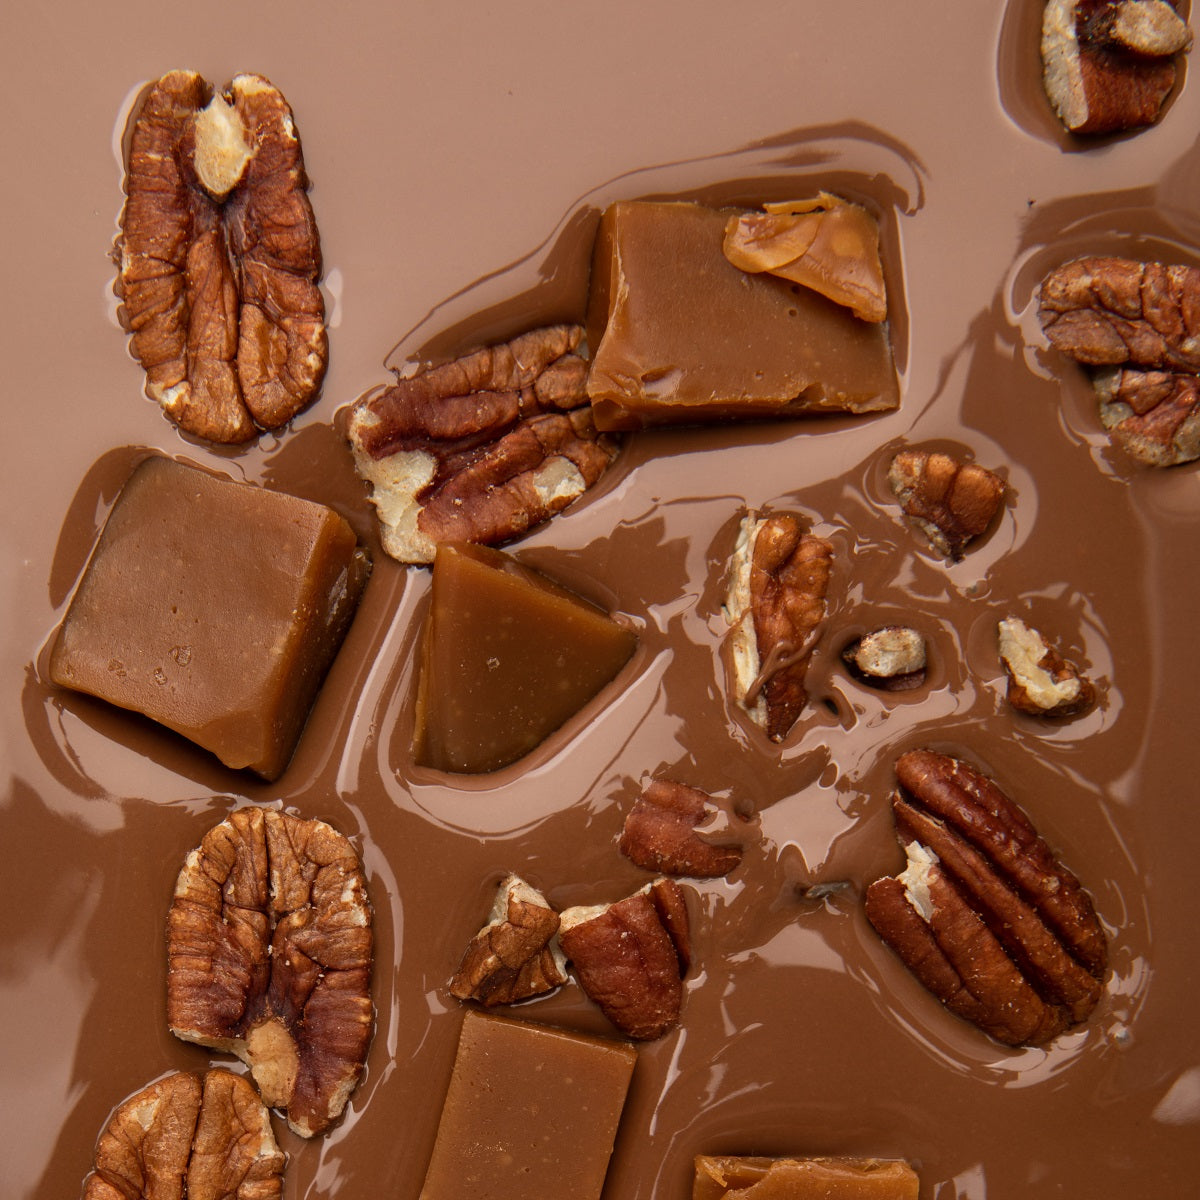 Tableta de chocolate con leche 38% cacao con nueces pecanas y caramelo